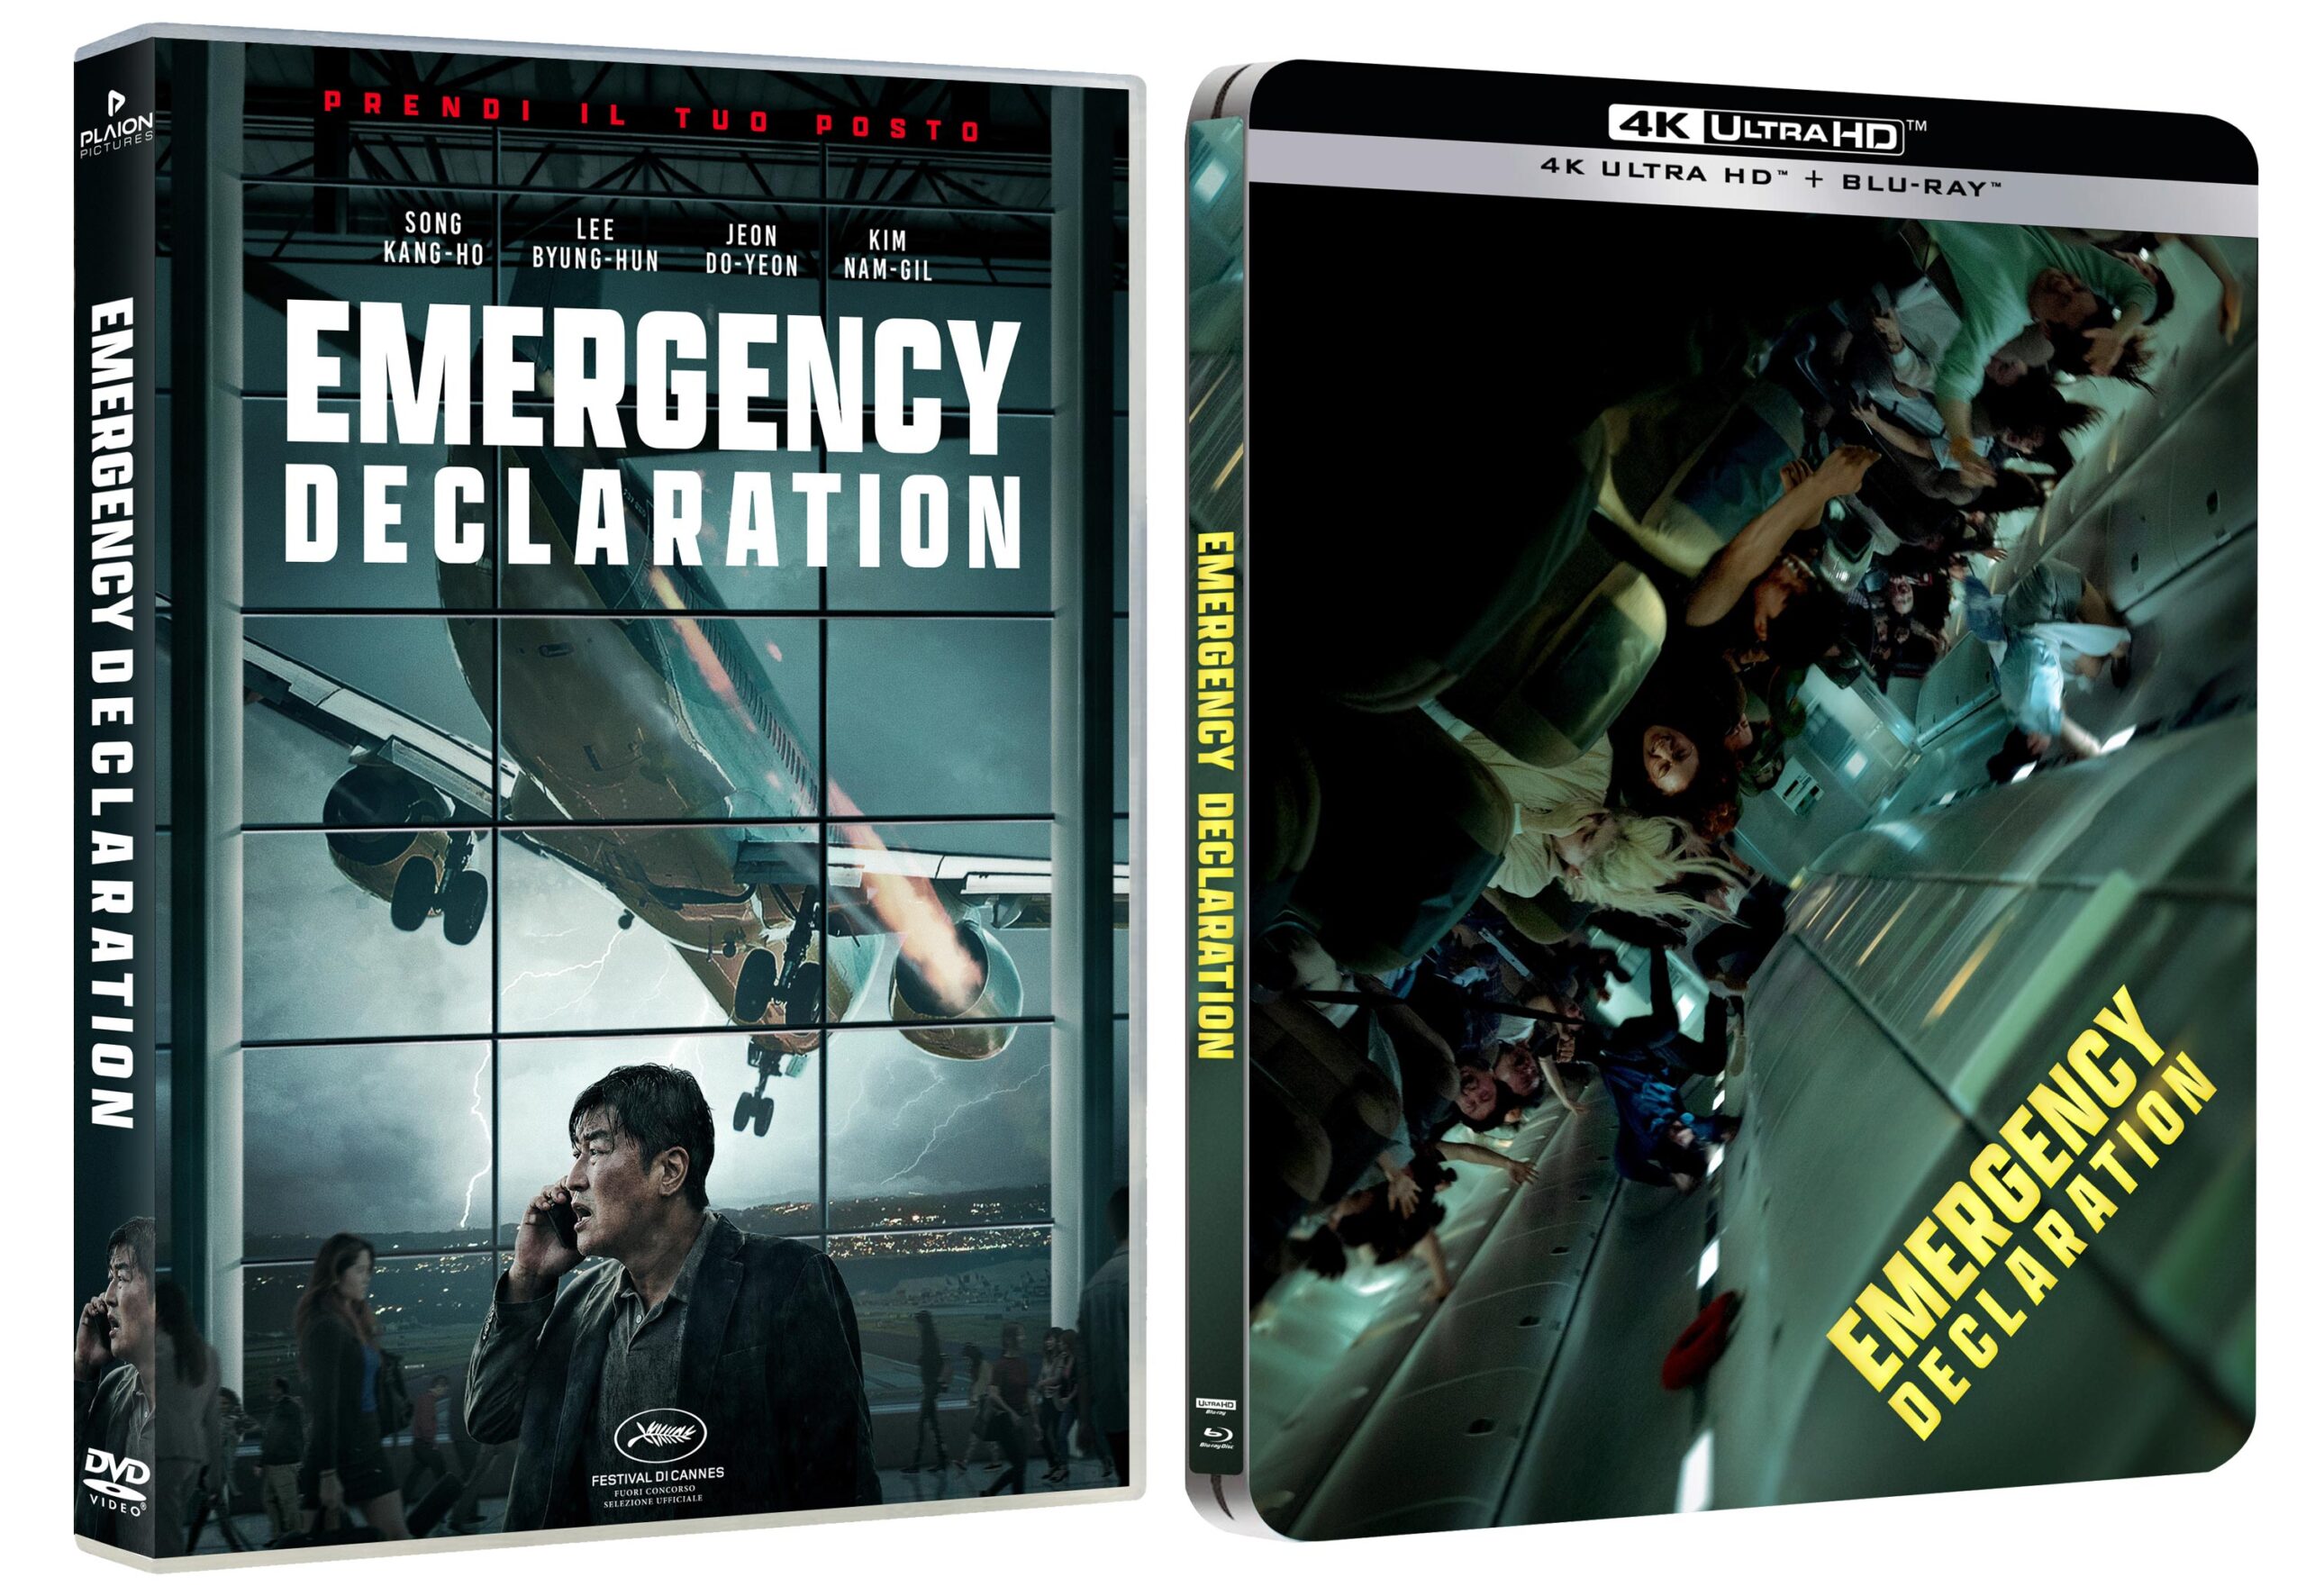 Emergency Declaration in DVD e Steelbook 4K UHD + Bluray